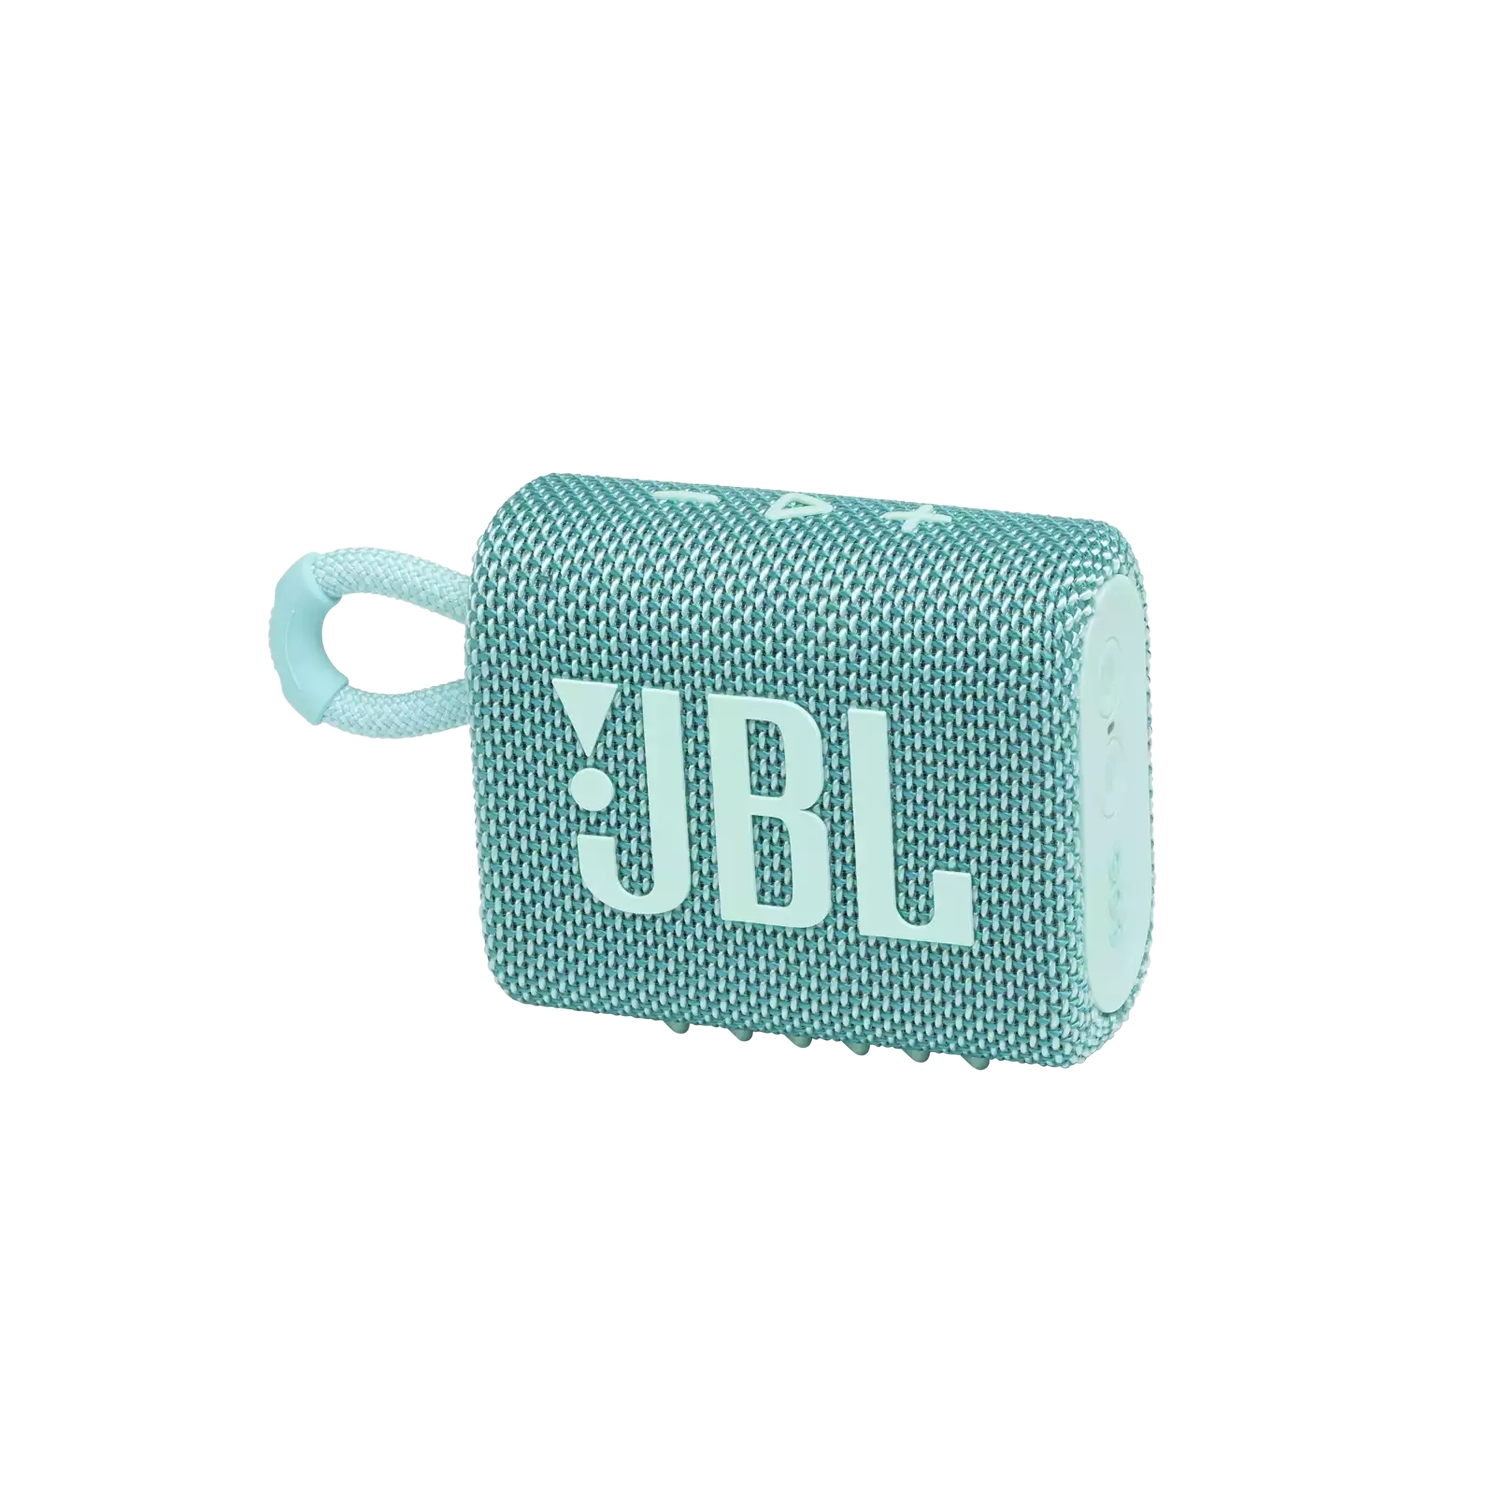 Портативная акустика JBL GO 3 бирюзовая портативная акустика jbl go 3 squad